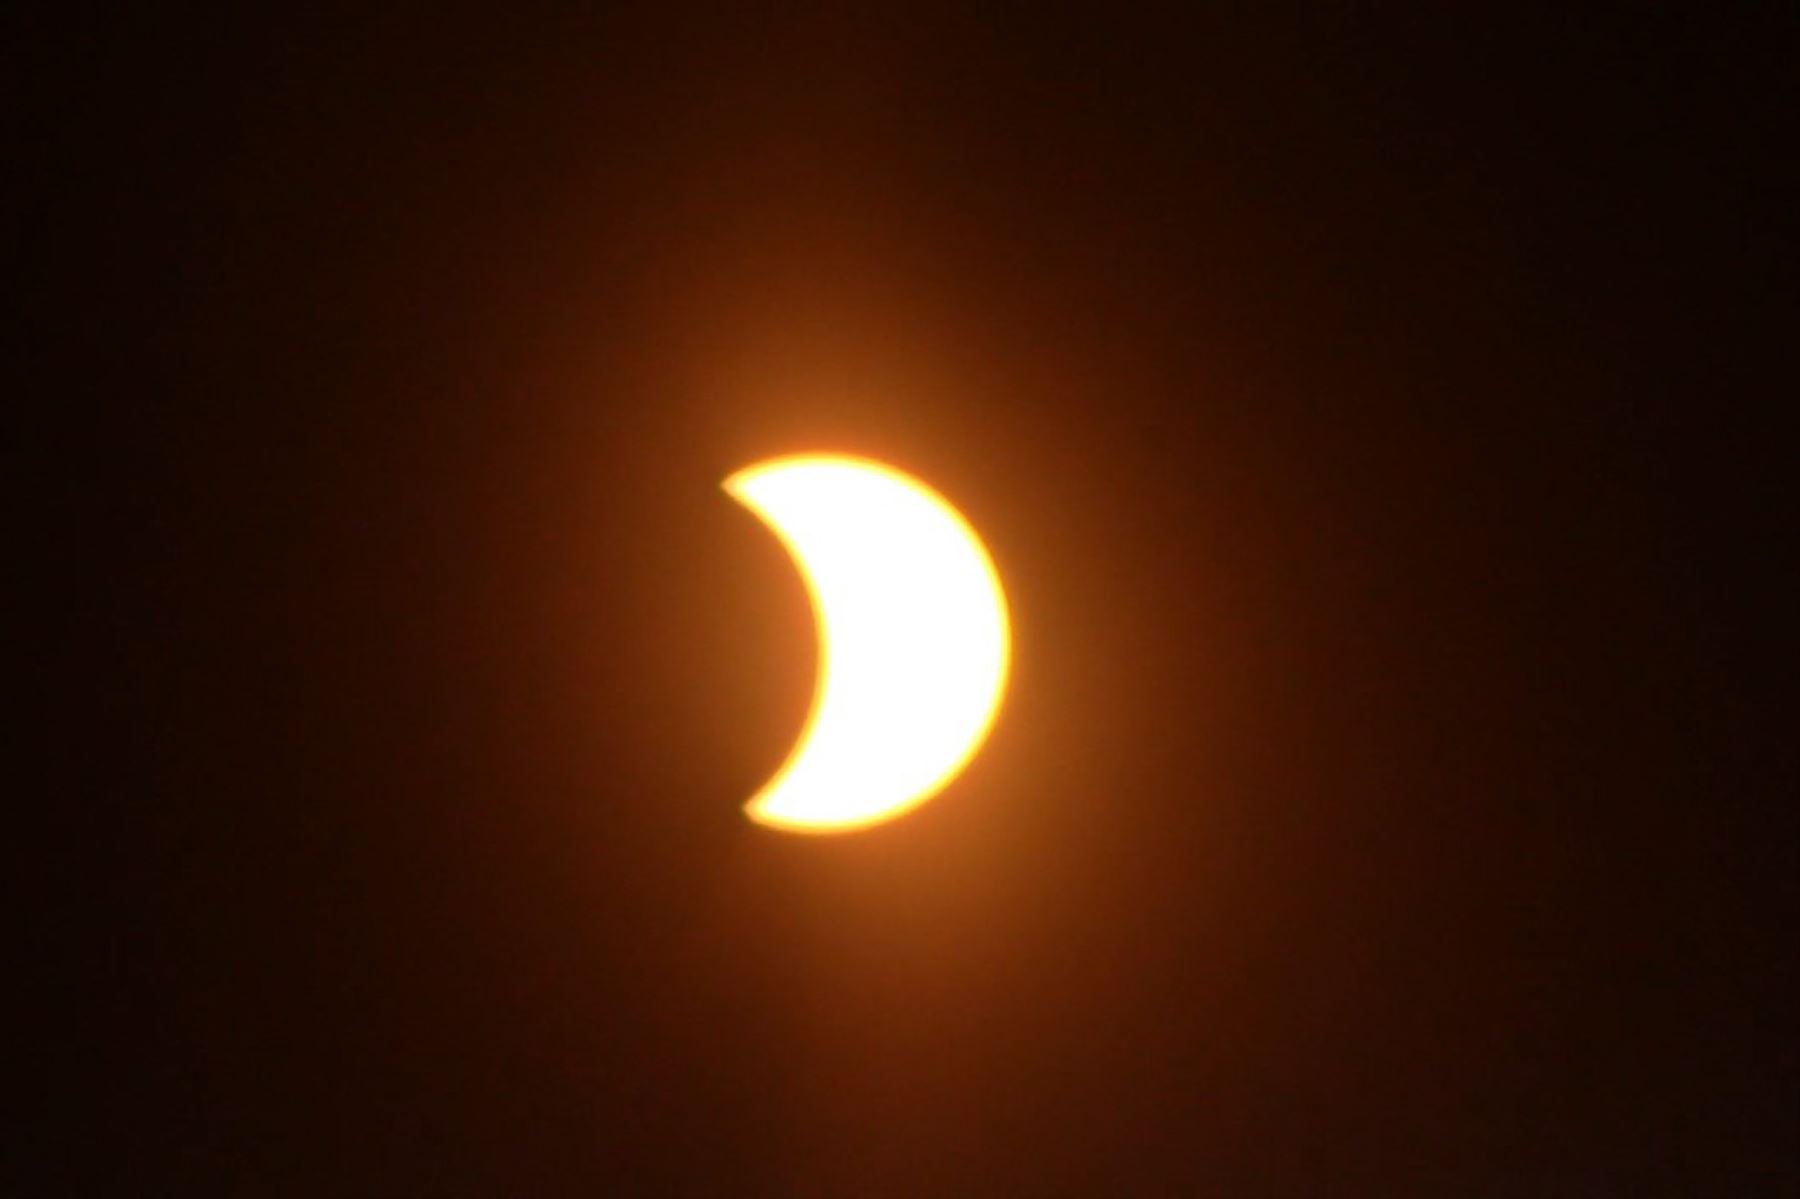 El eclipse parcial solar se vio en su mayor magnitud en Huancayo (Junín) a las 15:45 horas, momento en que el cielo se oscureció. Foto: Pedro Tinoco